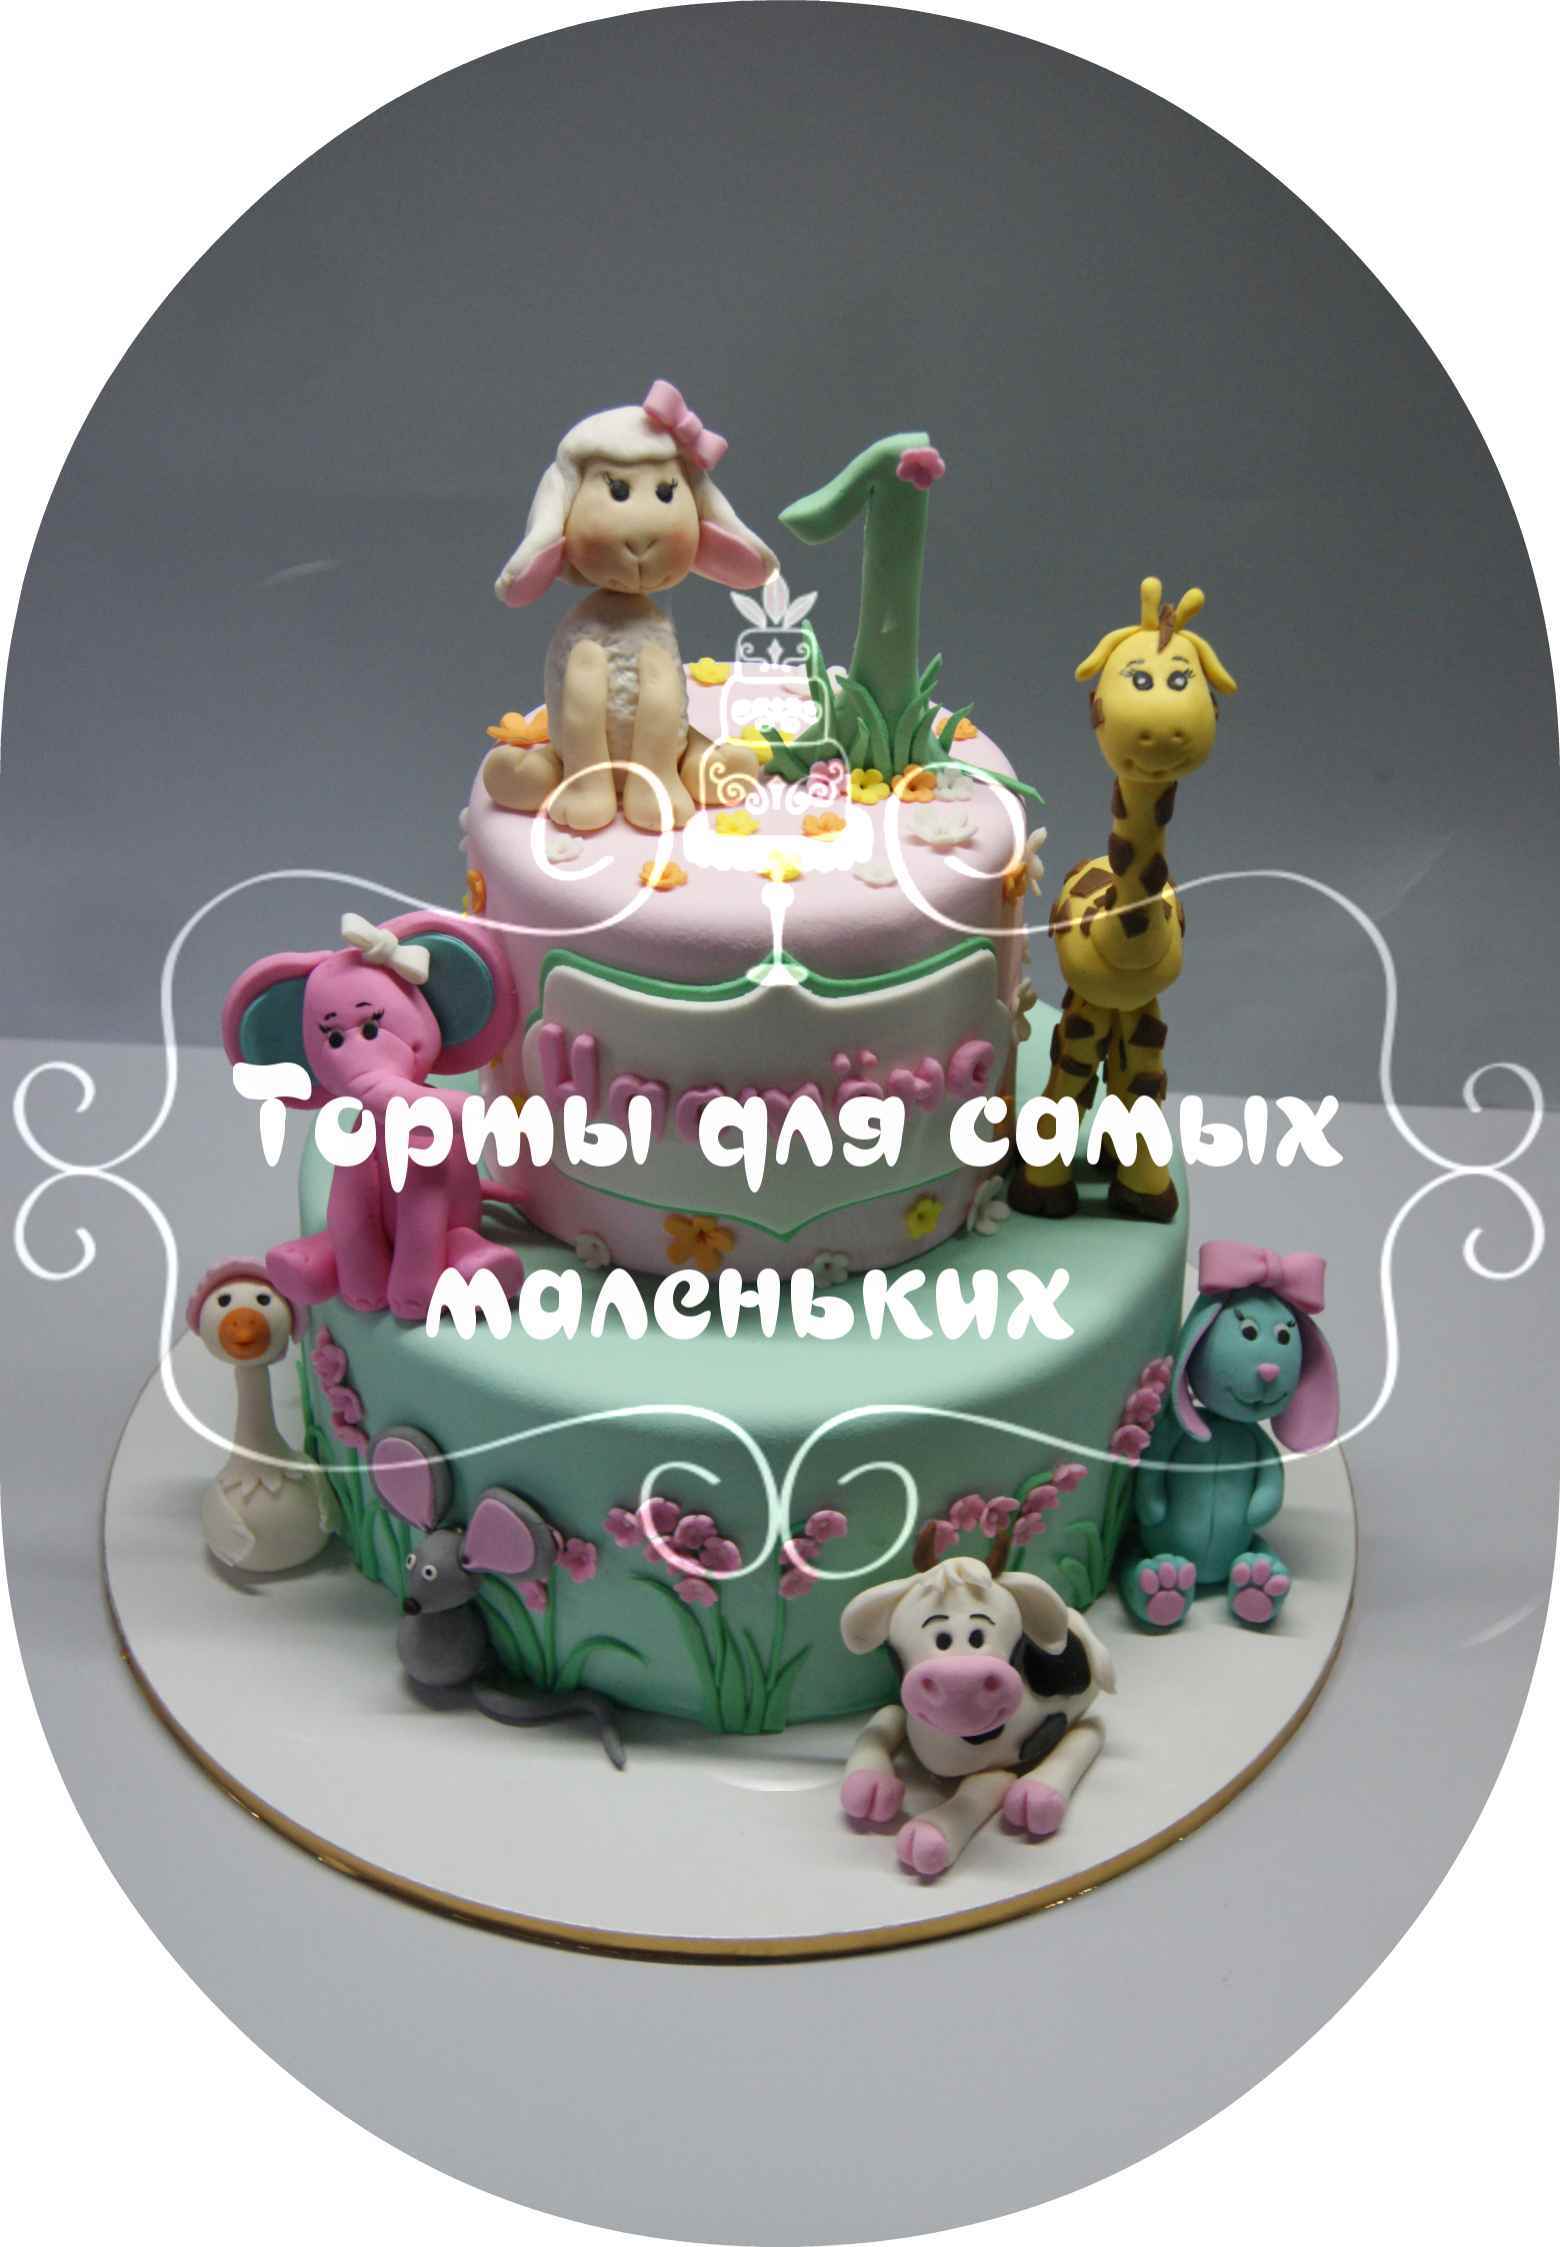 Детские торты на заказ Воронеж